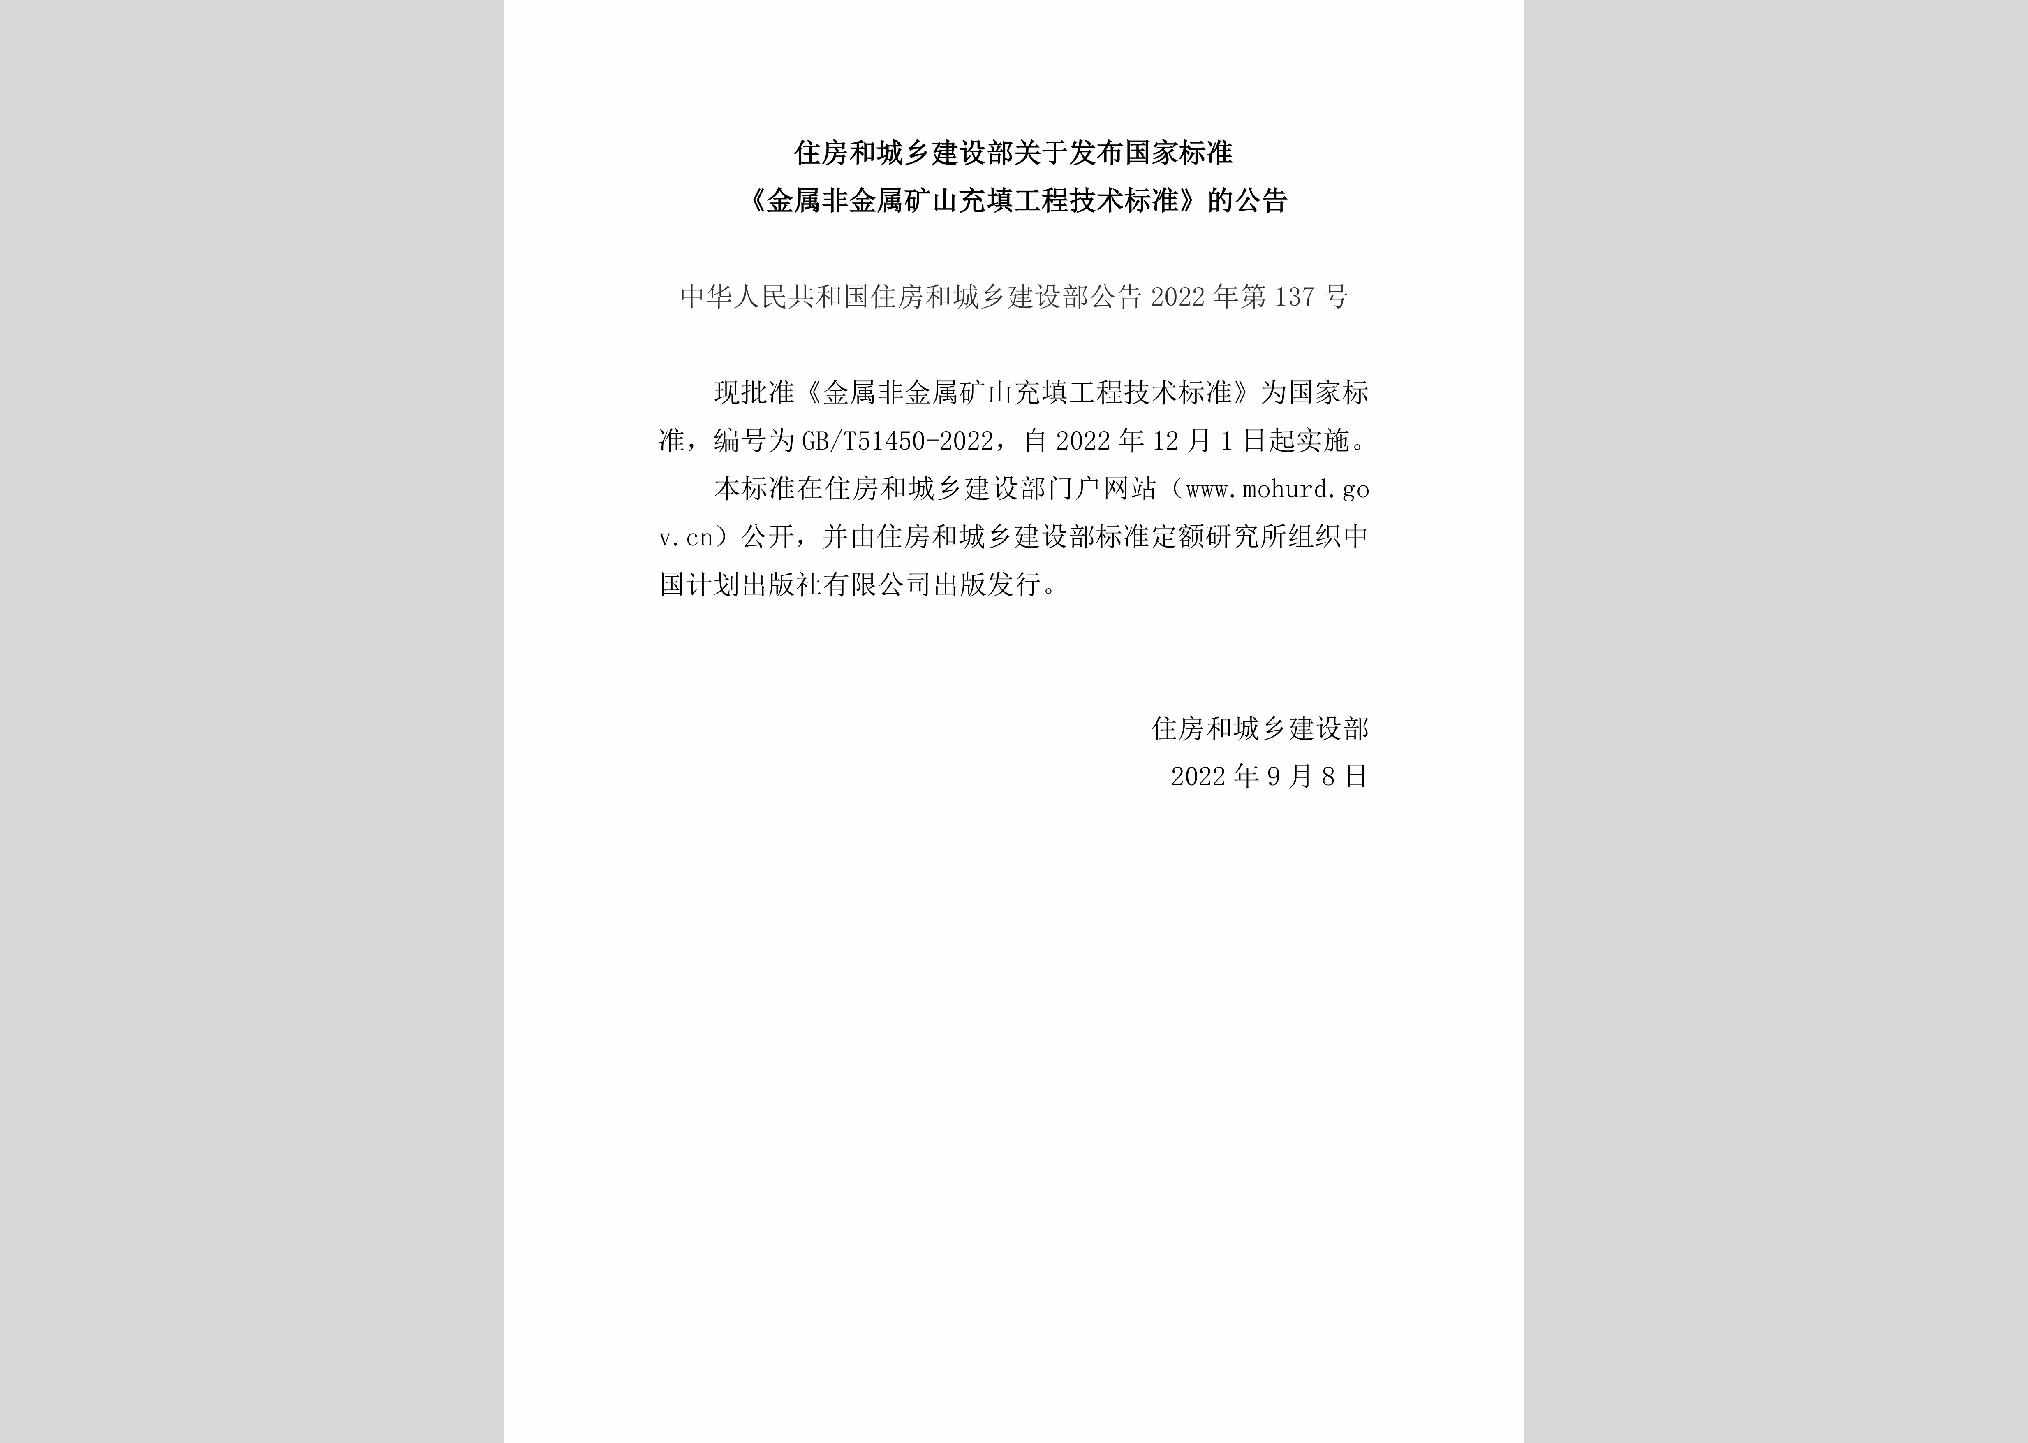 中华人民共和国住房和城乡建设部公告2022年第137号：住房和城乡建设部关于发布国家标准《金属非金属矿山充填工程技术标准》的公告